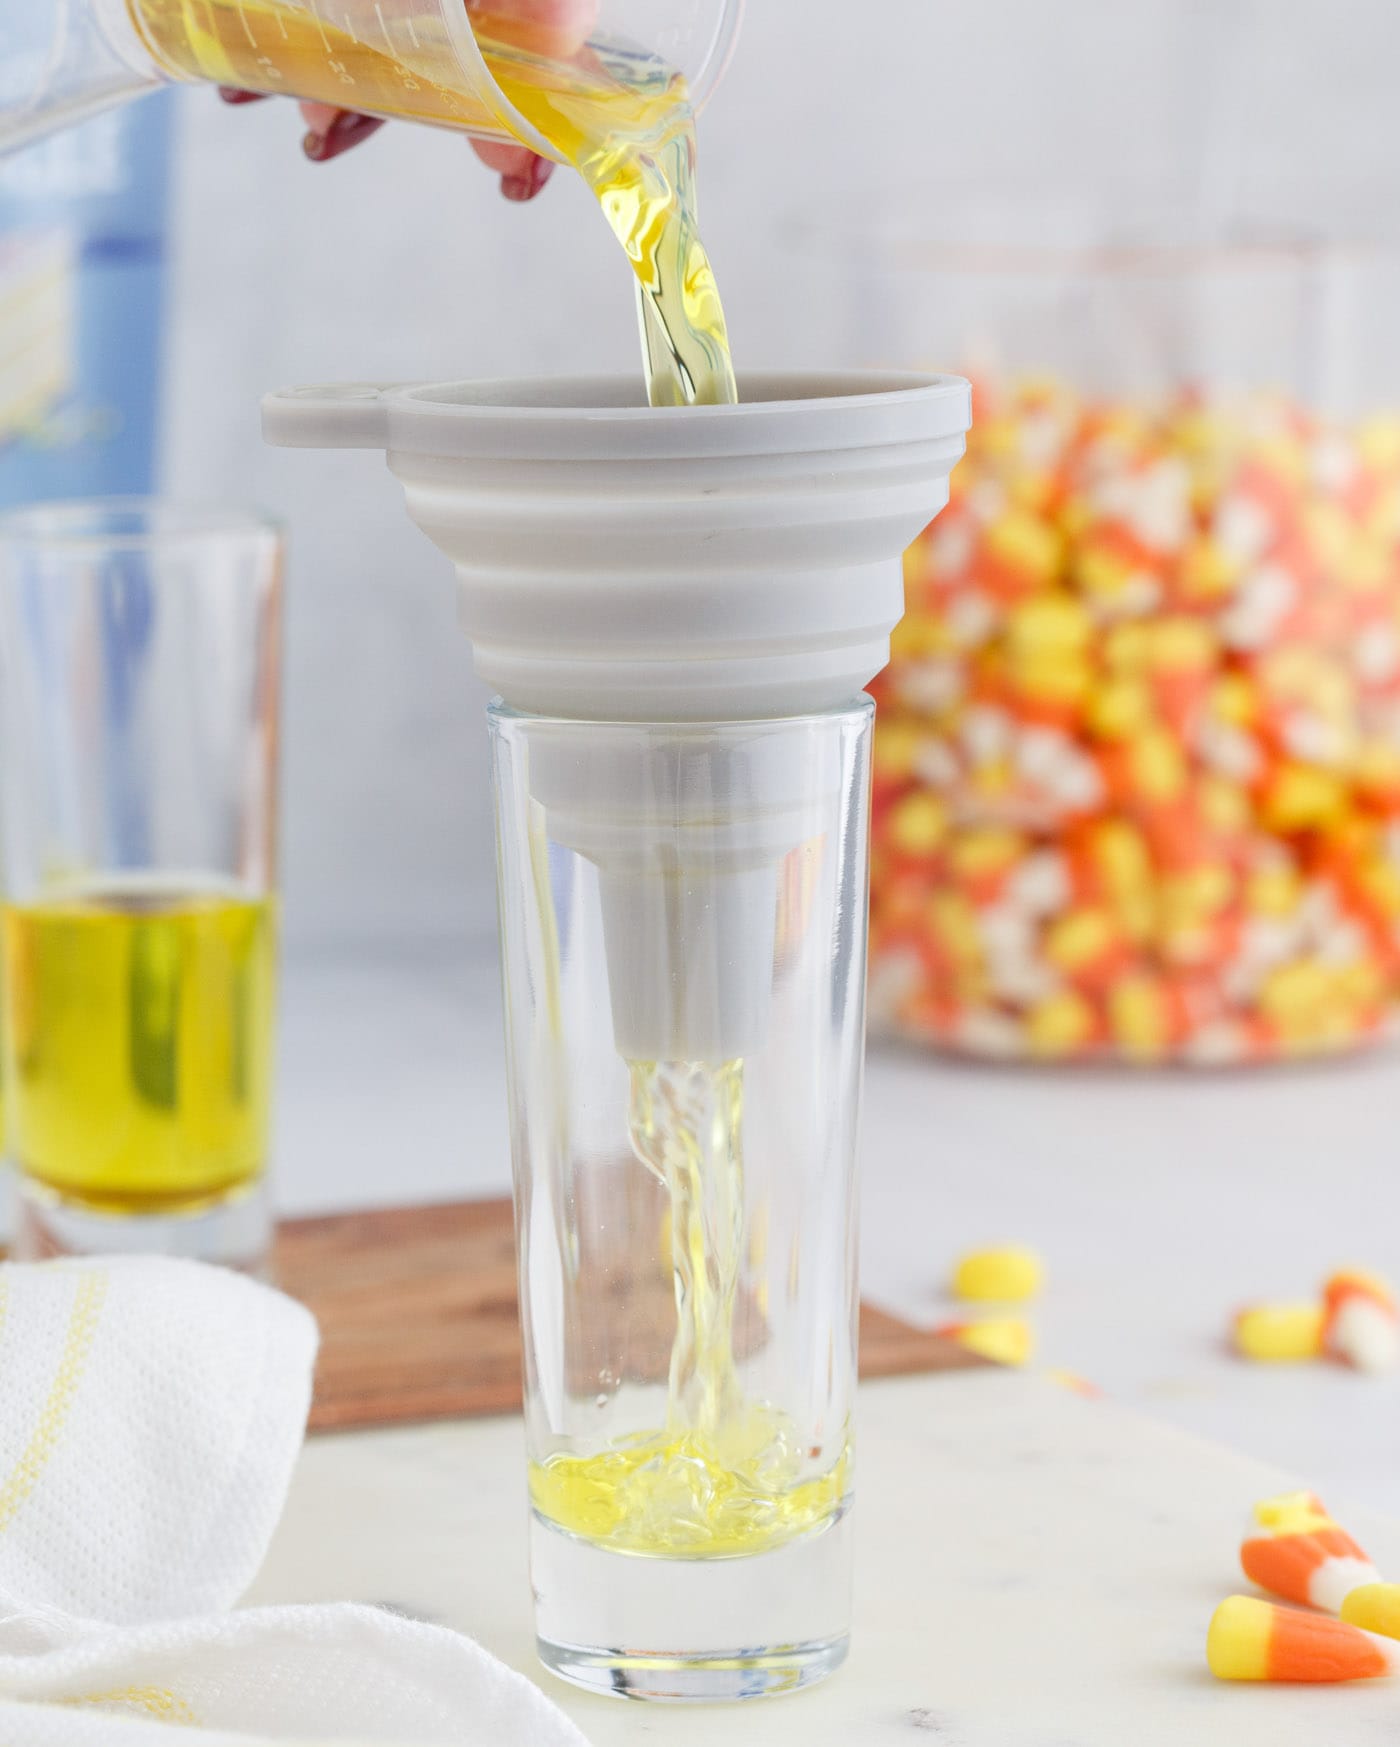 pouring jello mix into shot glass